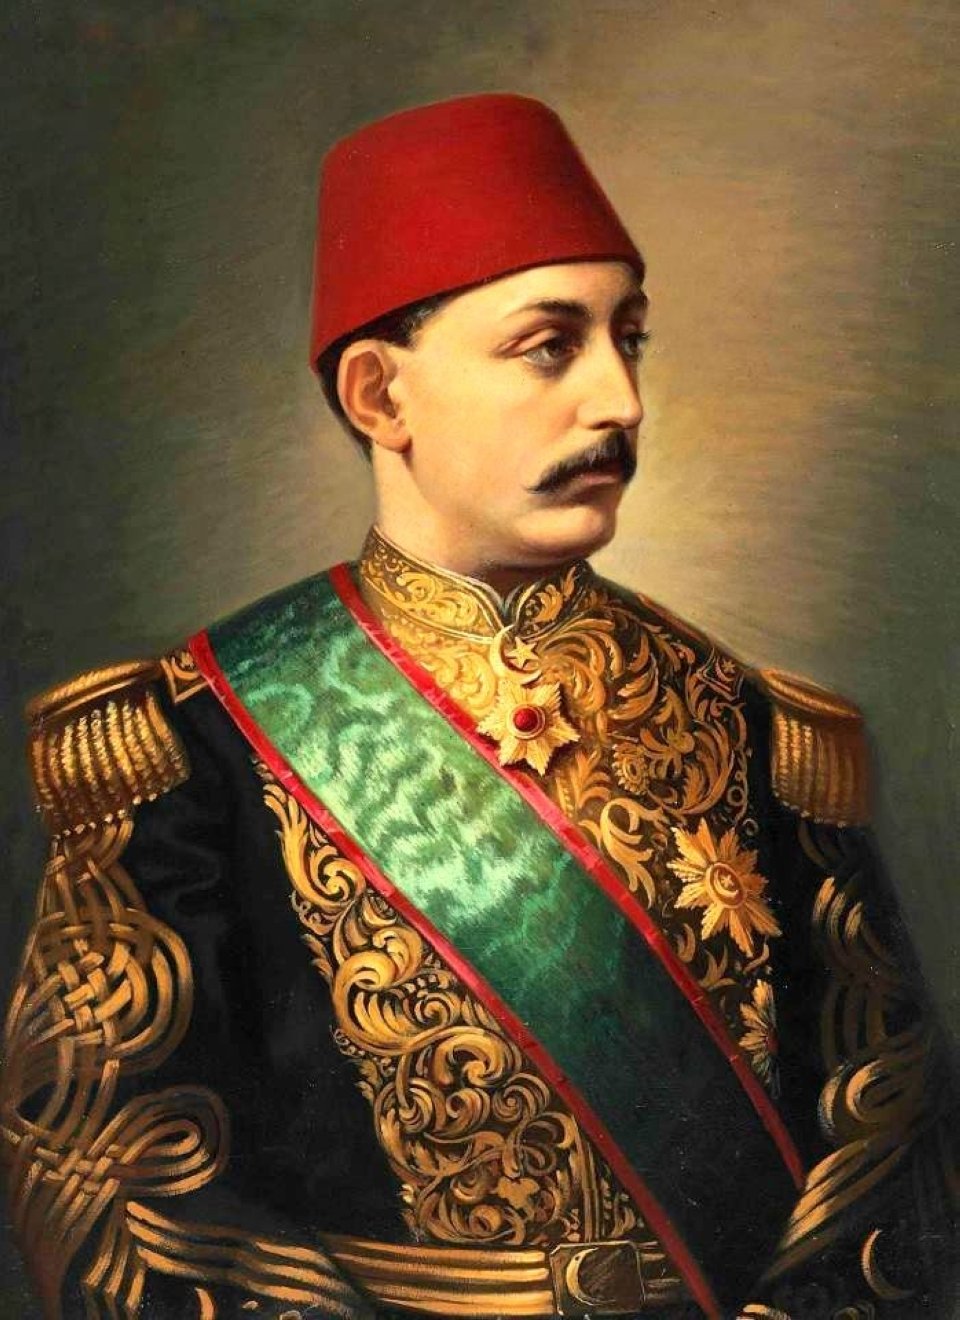 A portrait of Sultan Murad V.